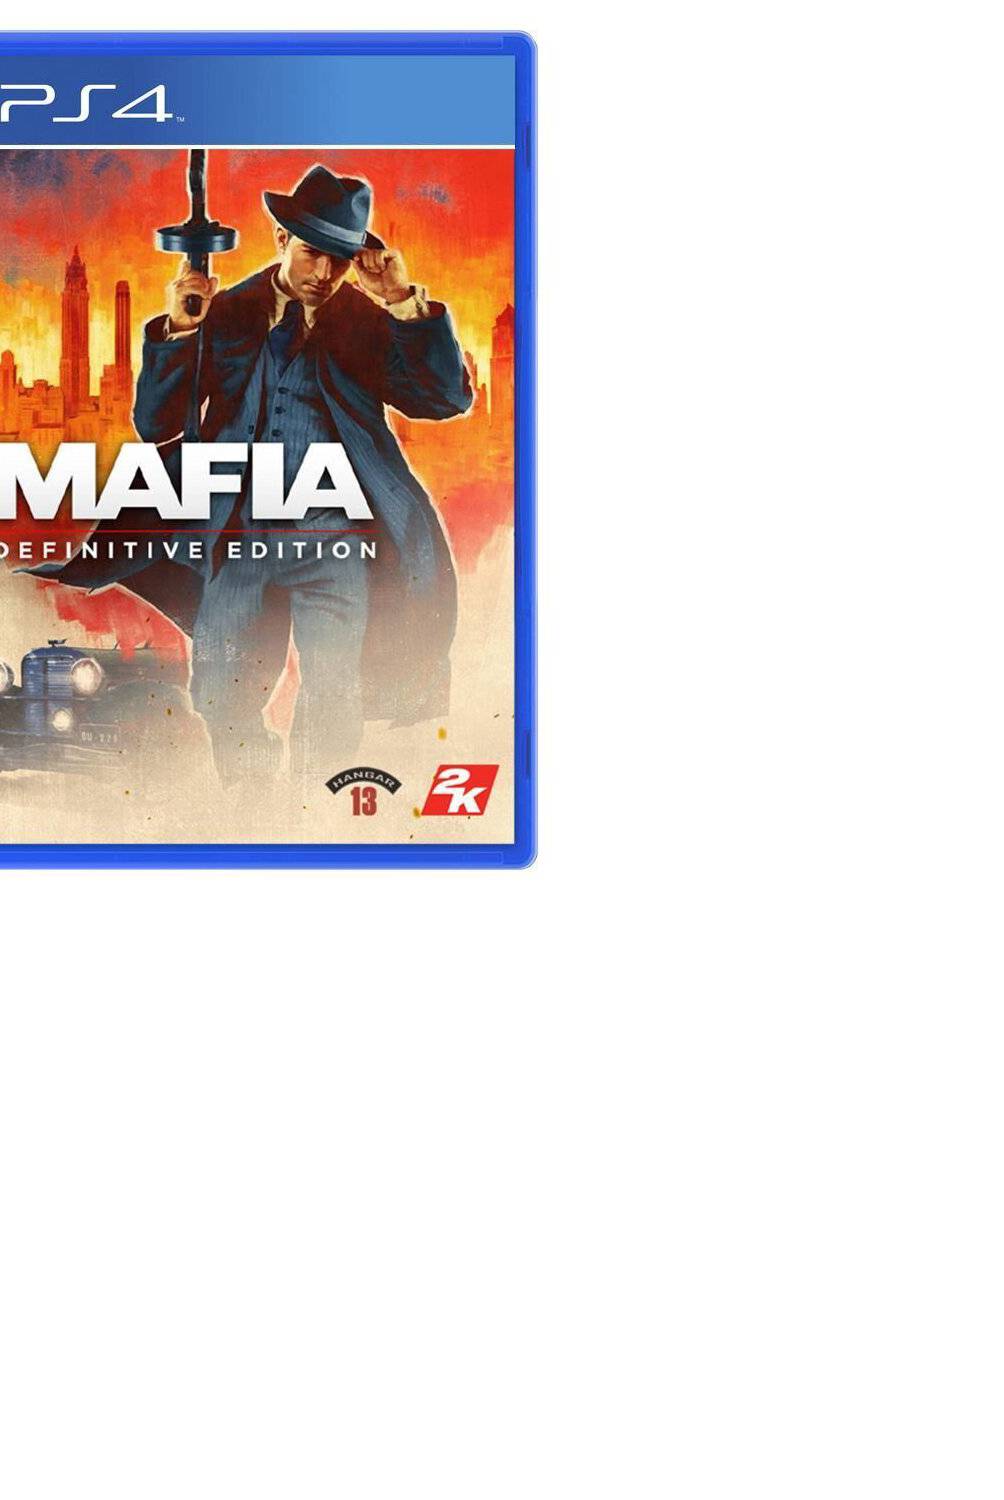 2K GAMES - Mafia Definitive Edition - Ps4